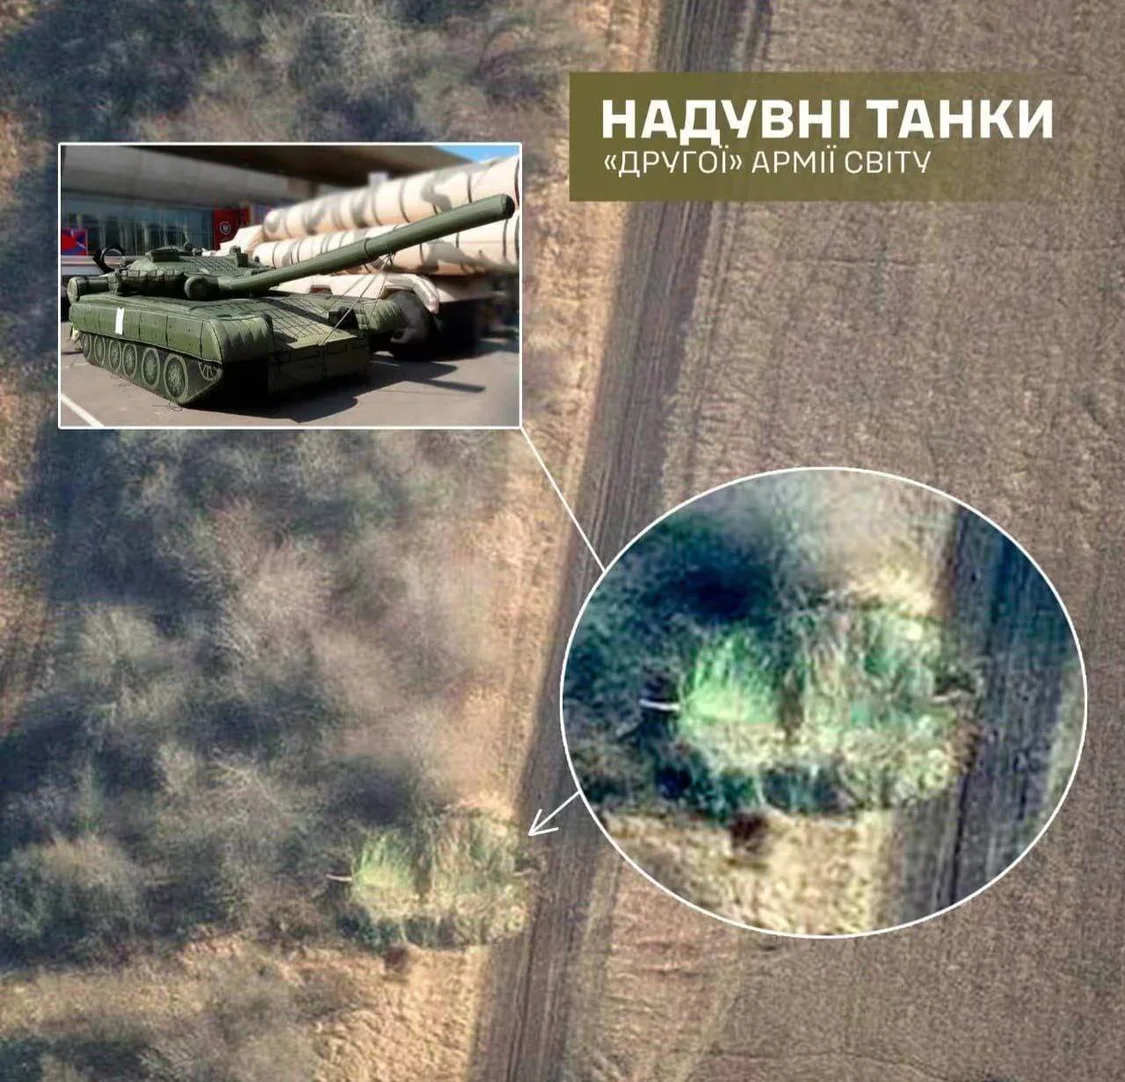 俄军在乌克兰使用坦克充气模型 双方对“战果”各执一词